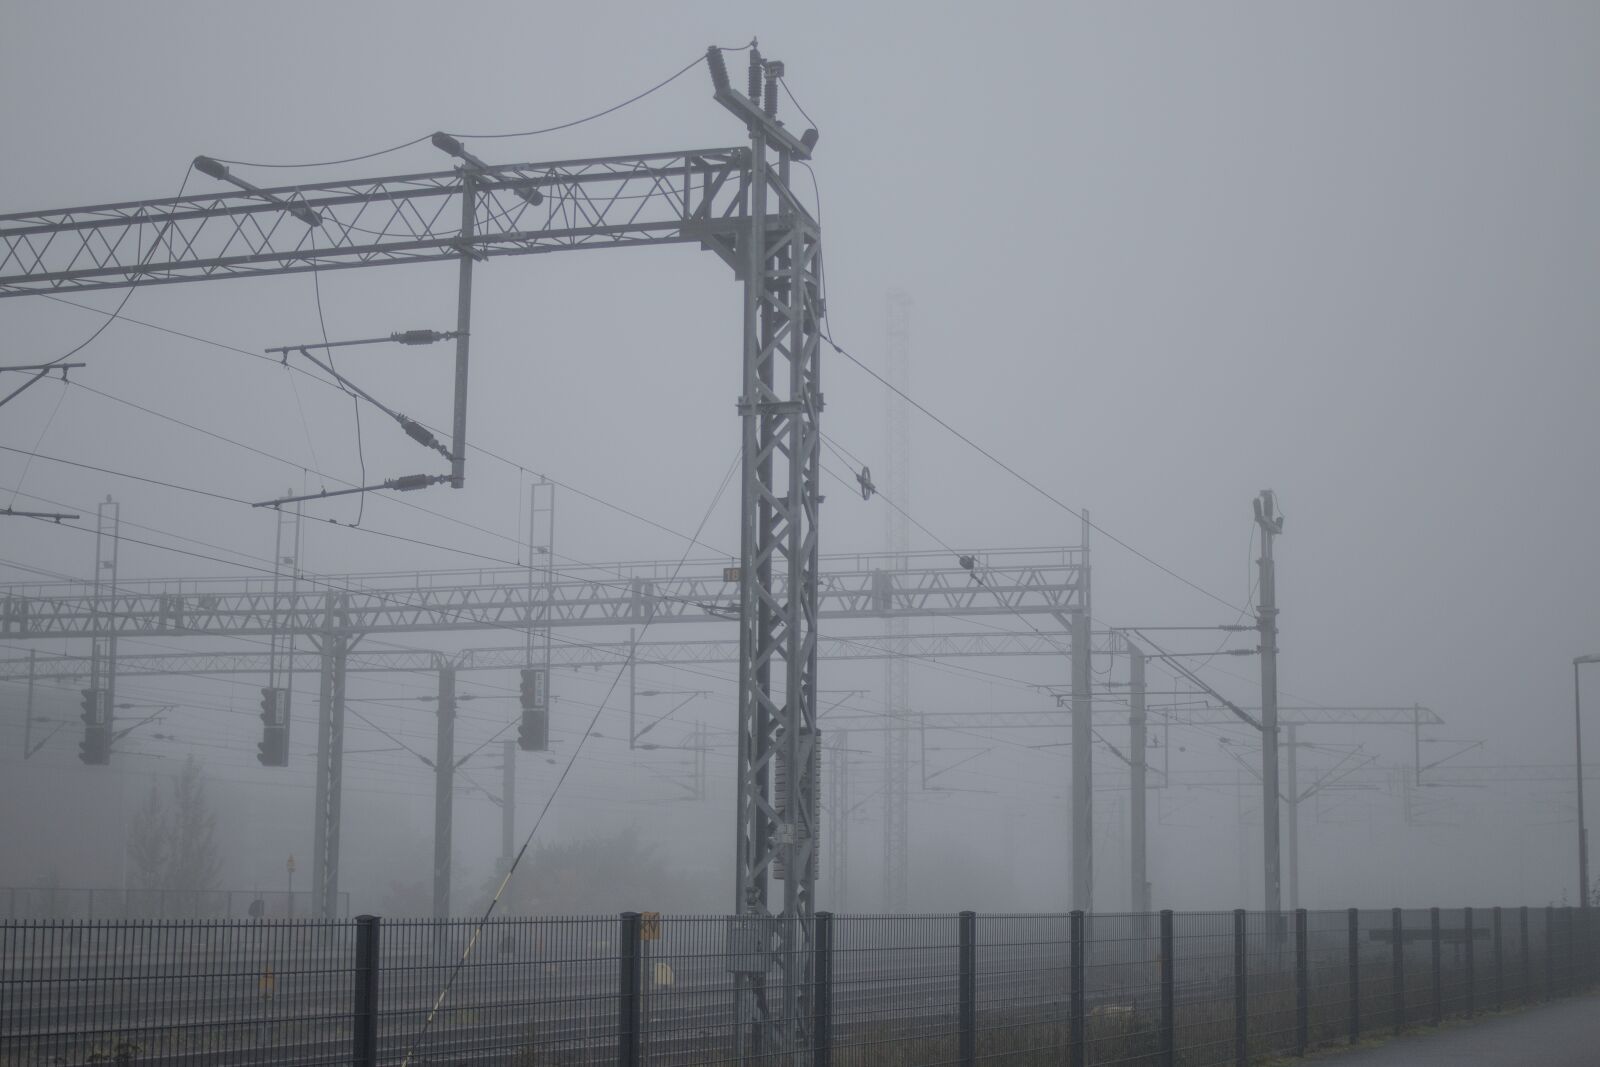 Canon EOS 70D sample photo. Mist, fog, railway track photography